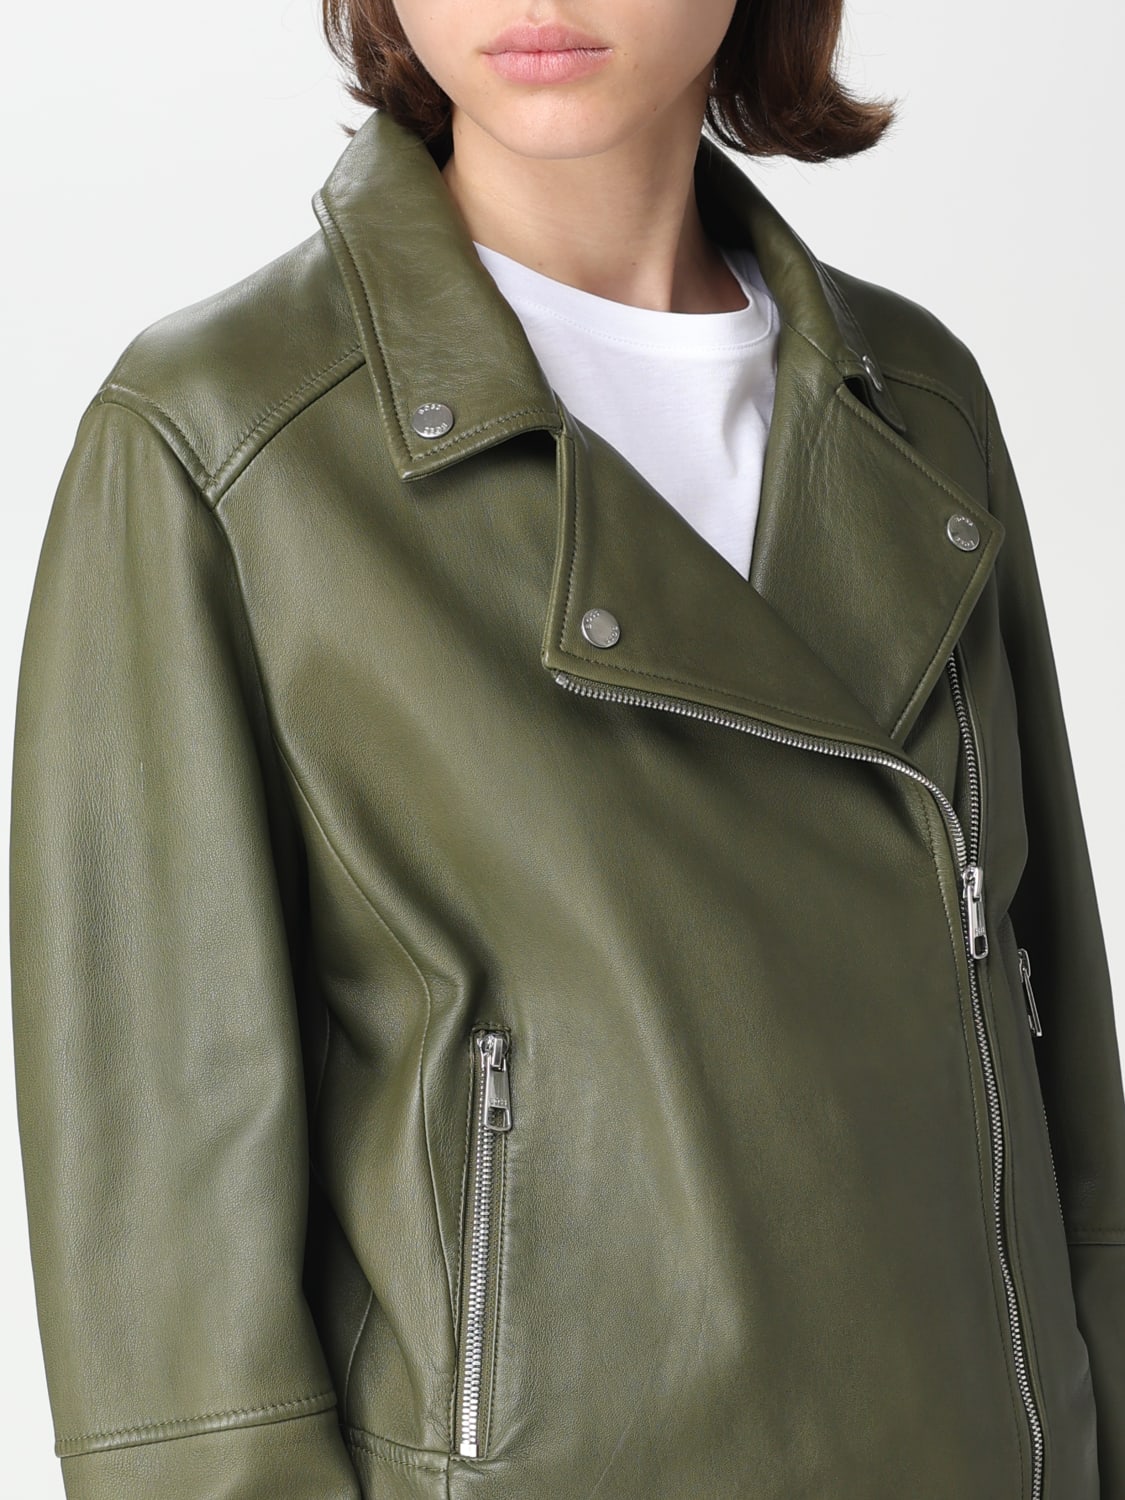 Middelhavet Som regel tyve BOSS: jacket for woman - Green | Boss jacket 50487600 online at GIGLIO.COM